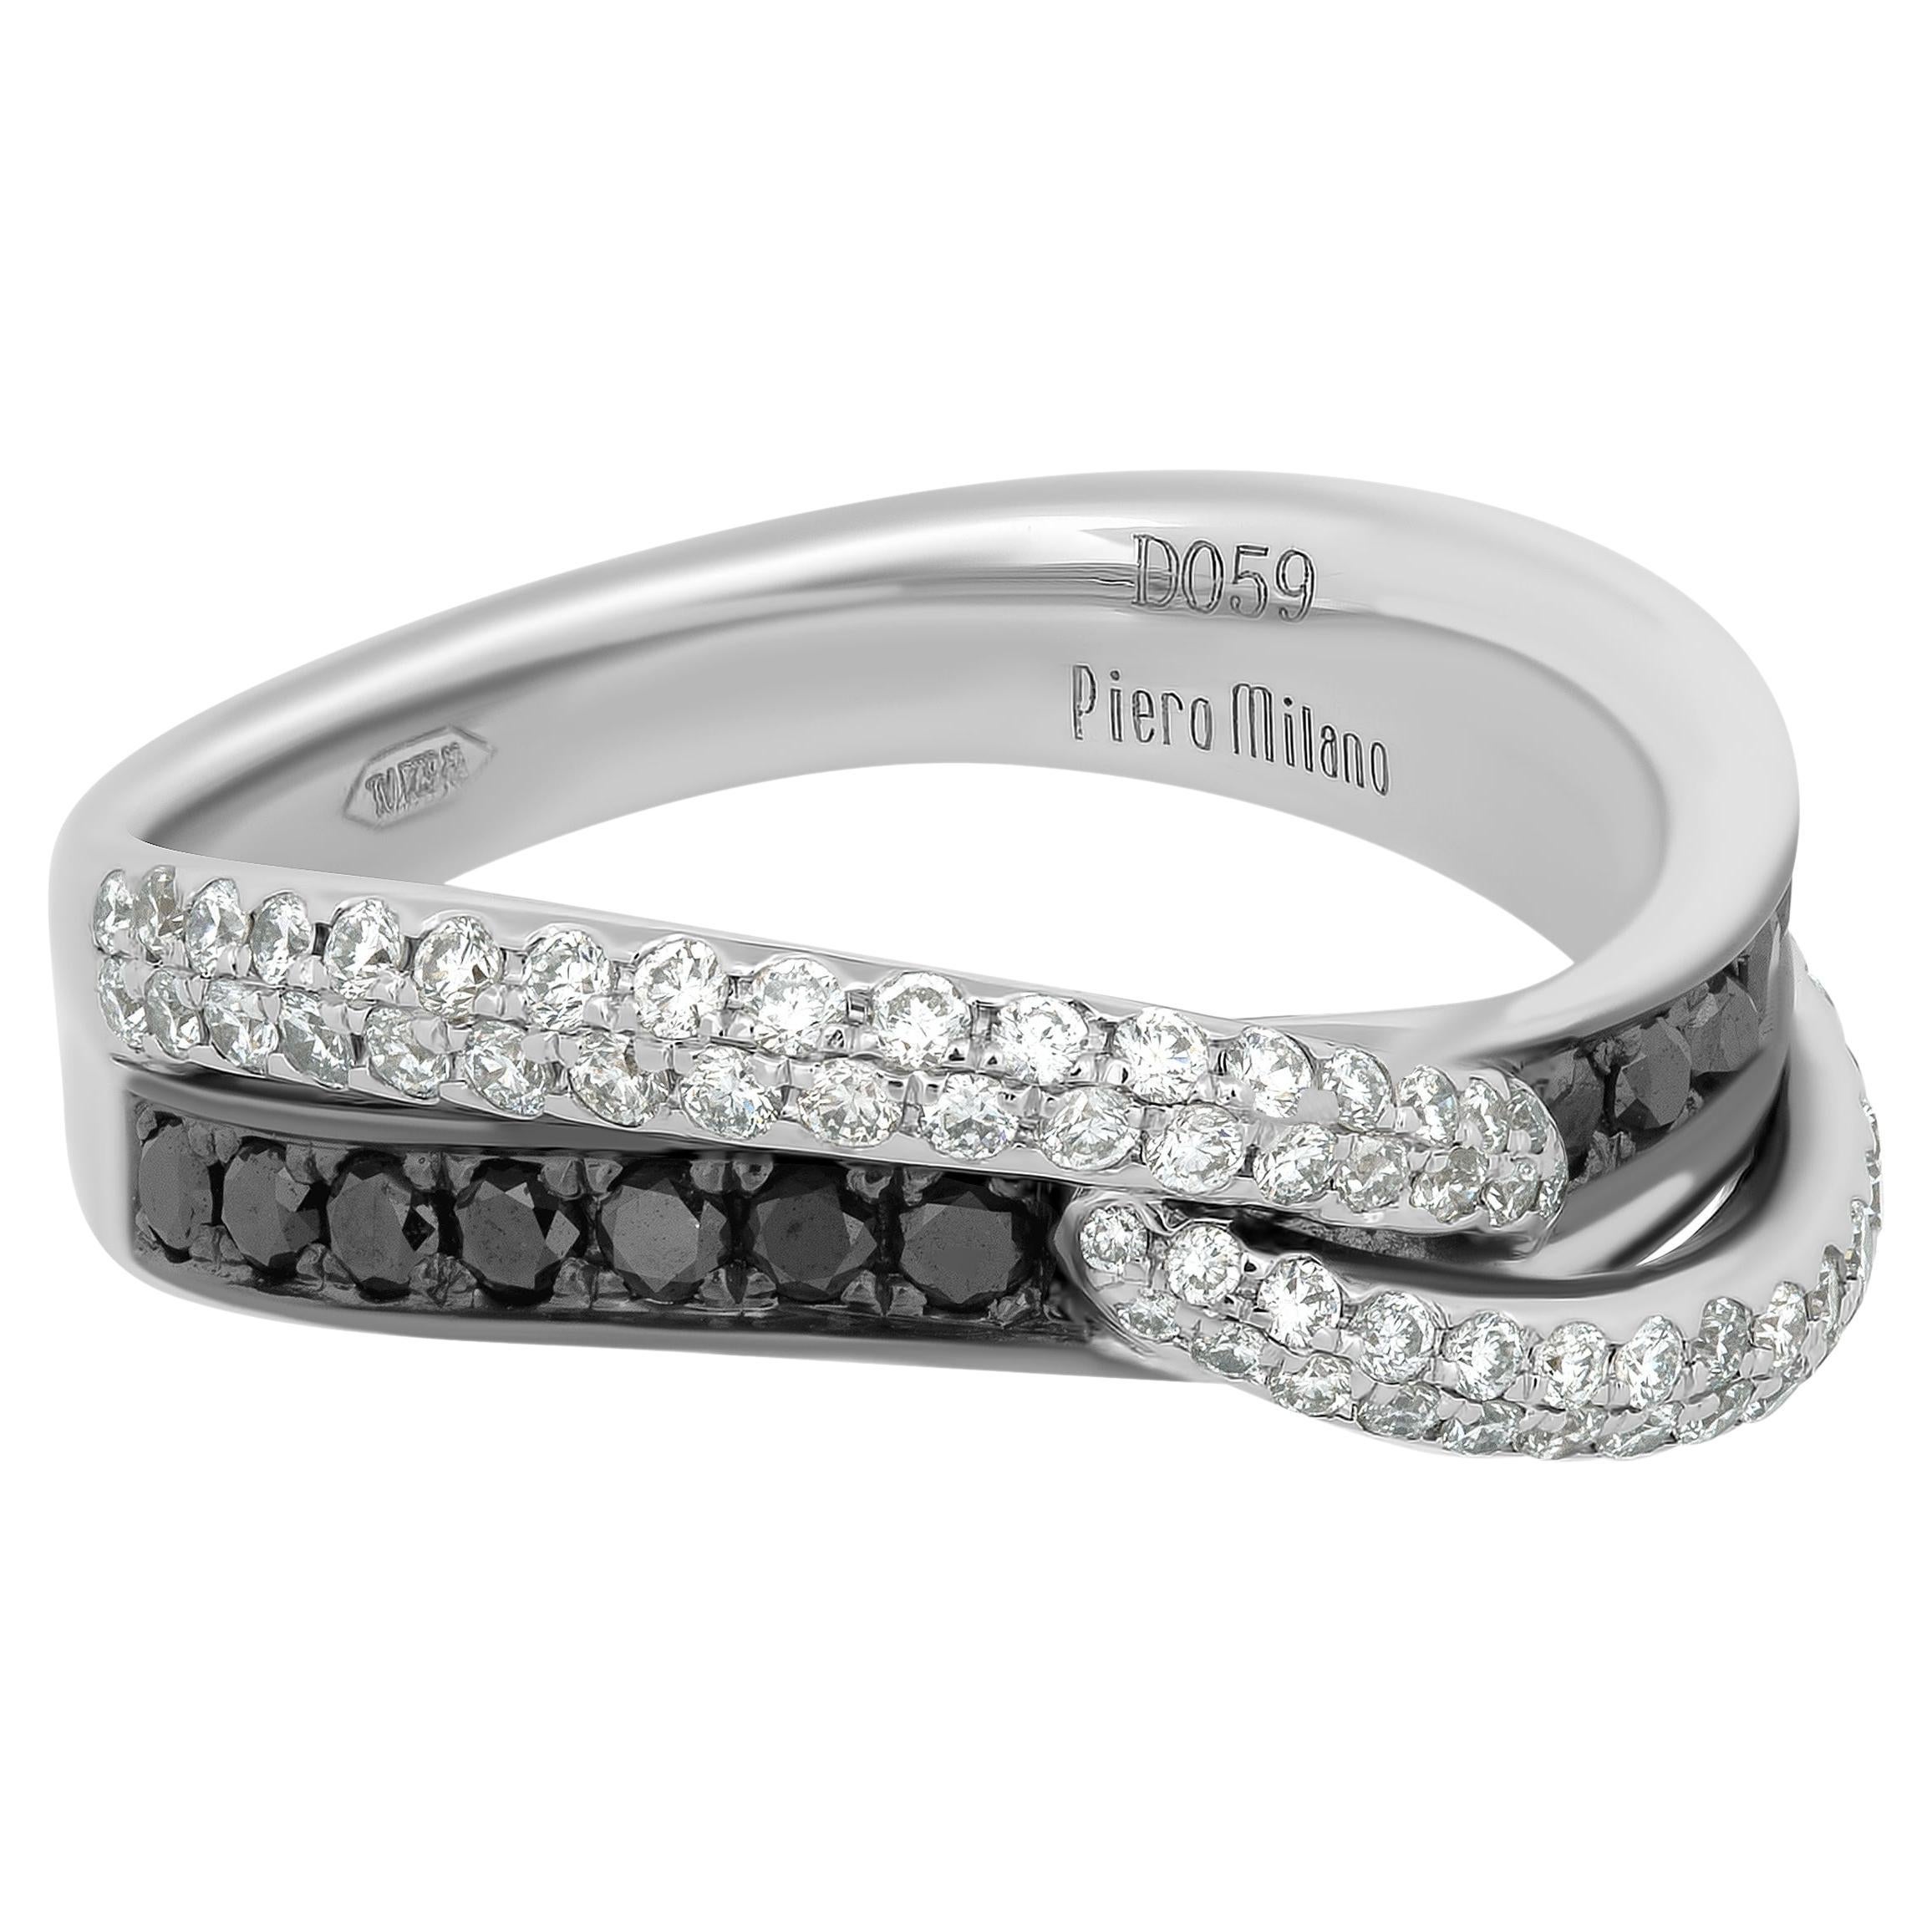 Piero Milano 18K White Gold Diamond Ring Sz 6 For Sale